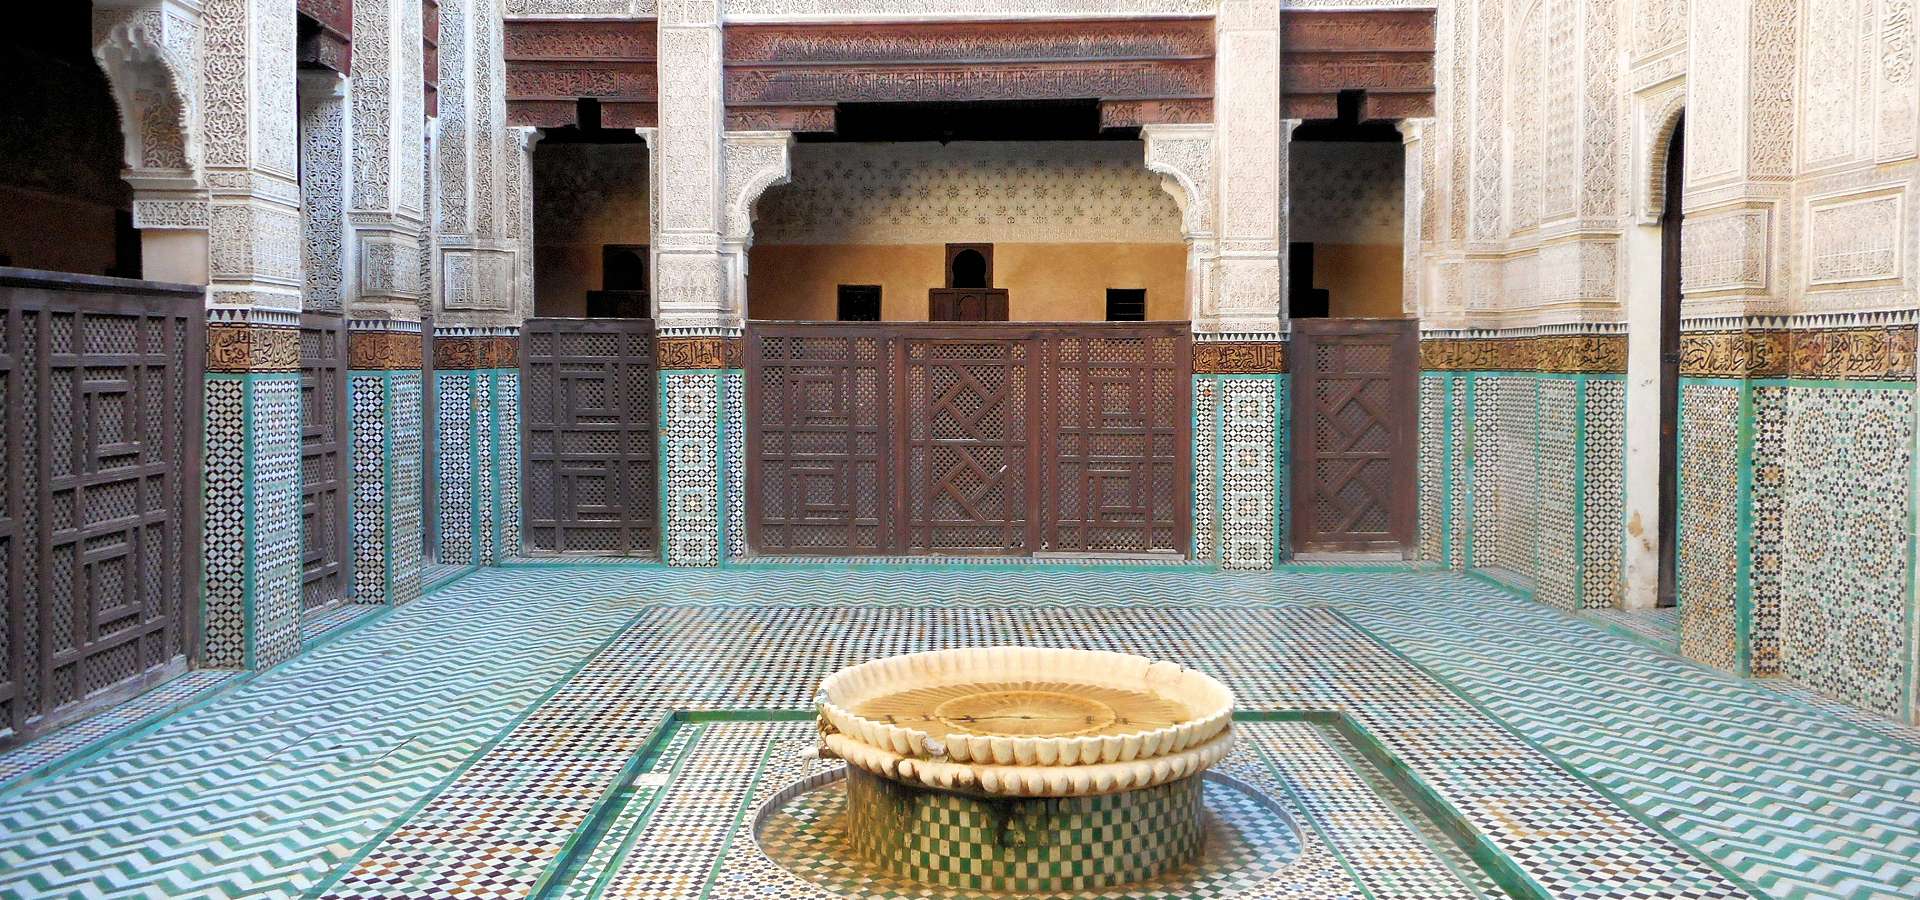 Marocco. Meknes